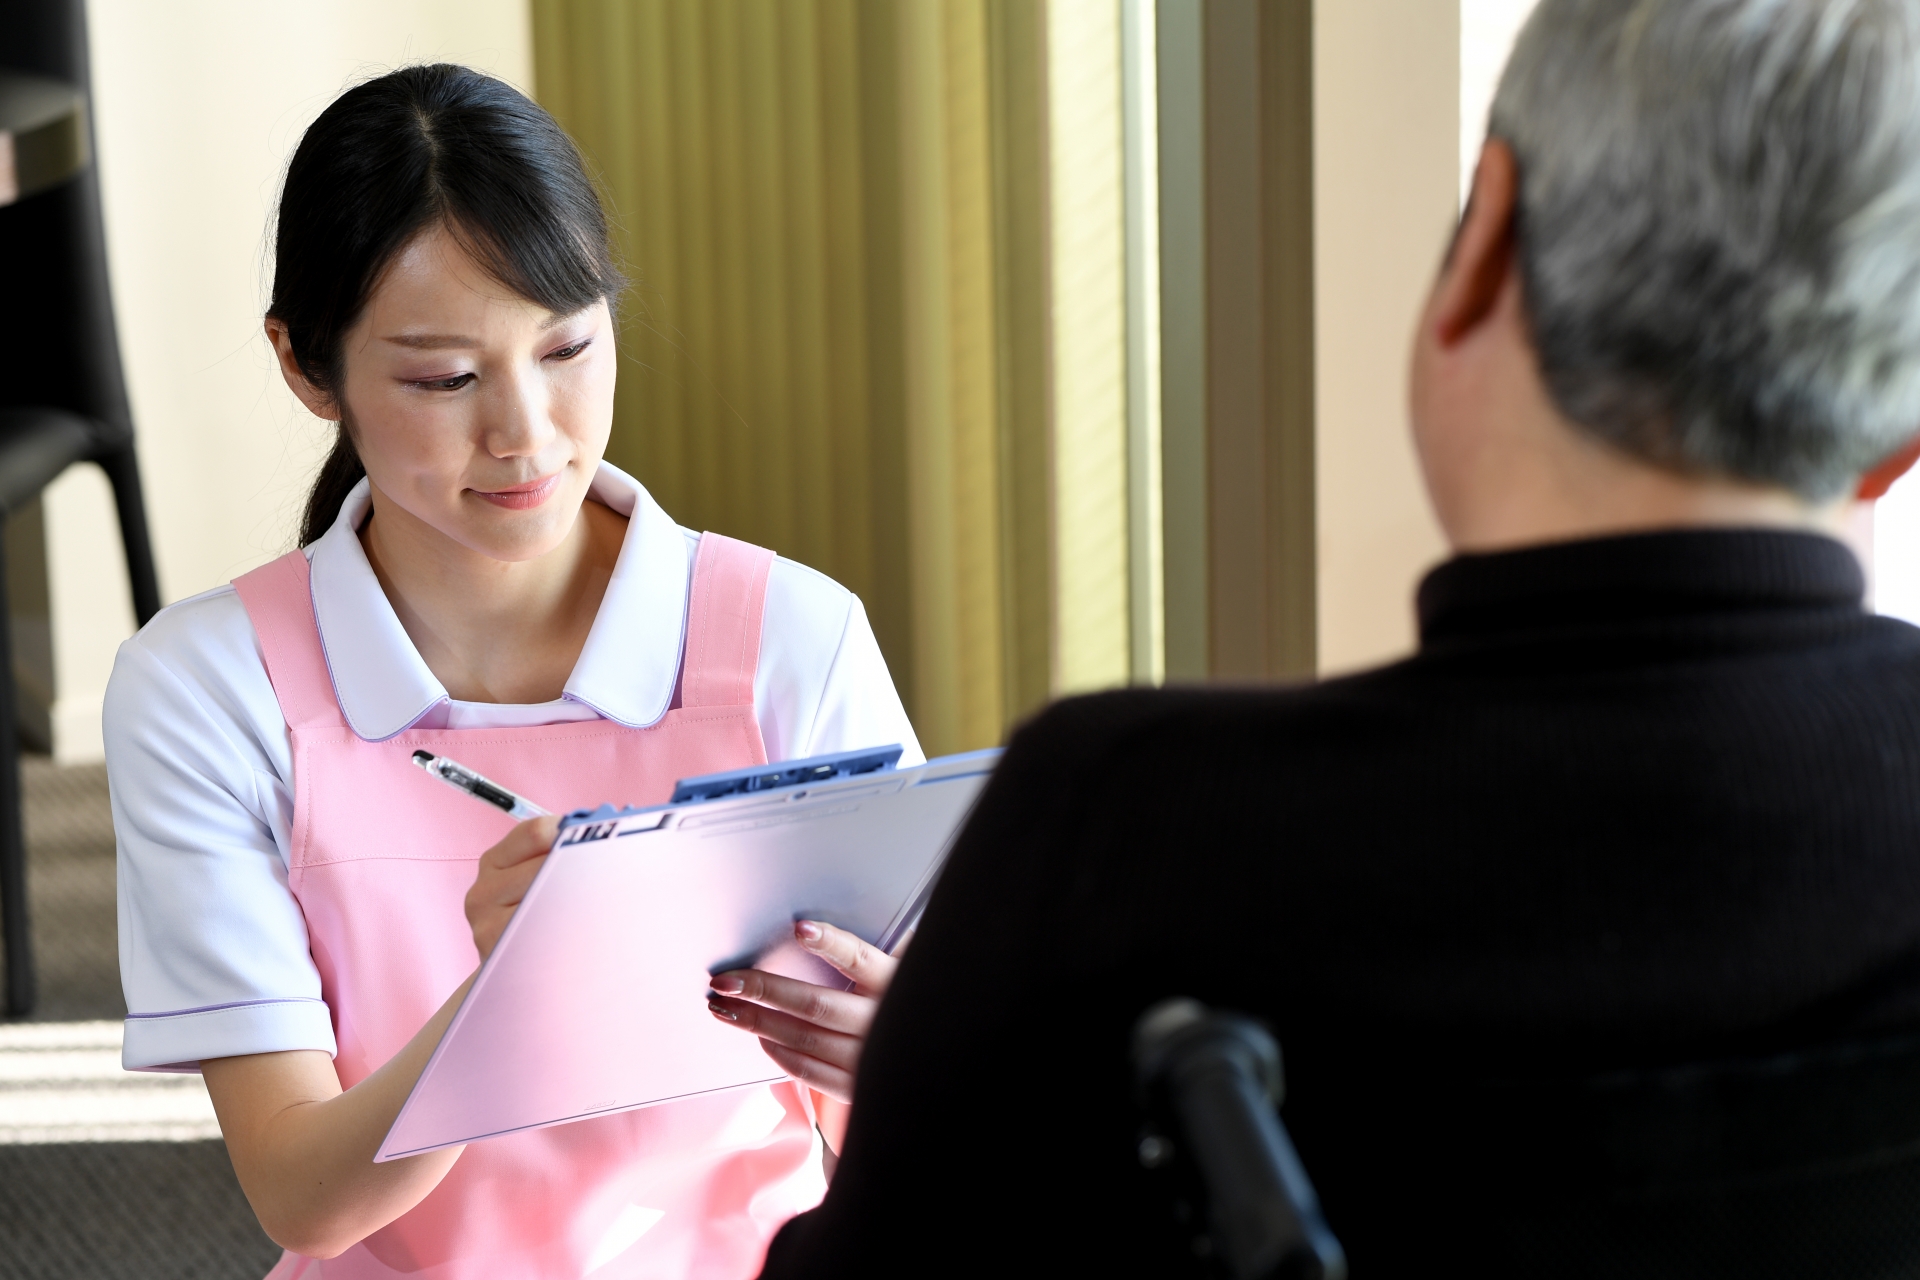 定期巡回サービス 定期巡回・随時対応型訪問介護看護 トゥーユー